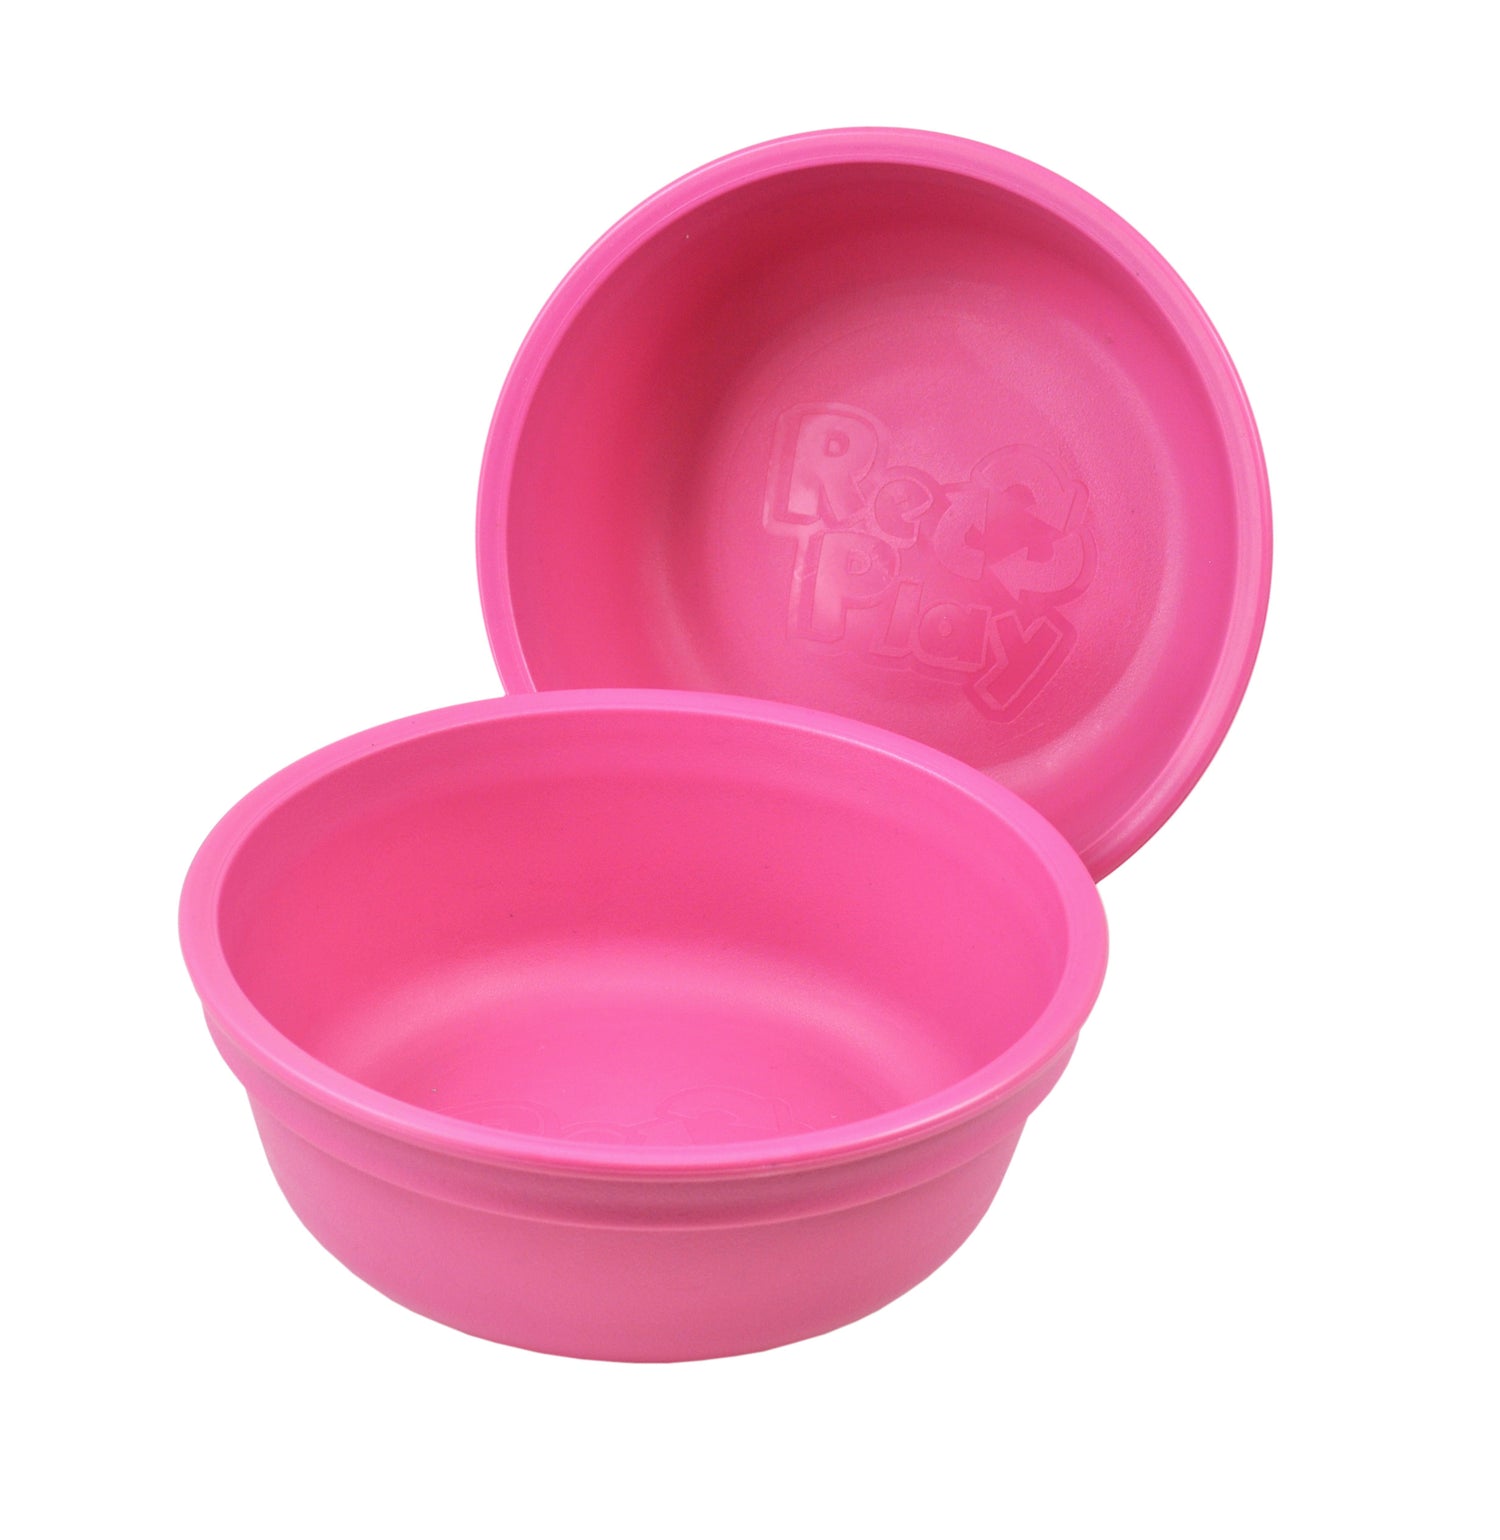 Re-Play Bowl - Vivid Pink - BabyBento